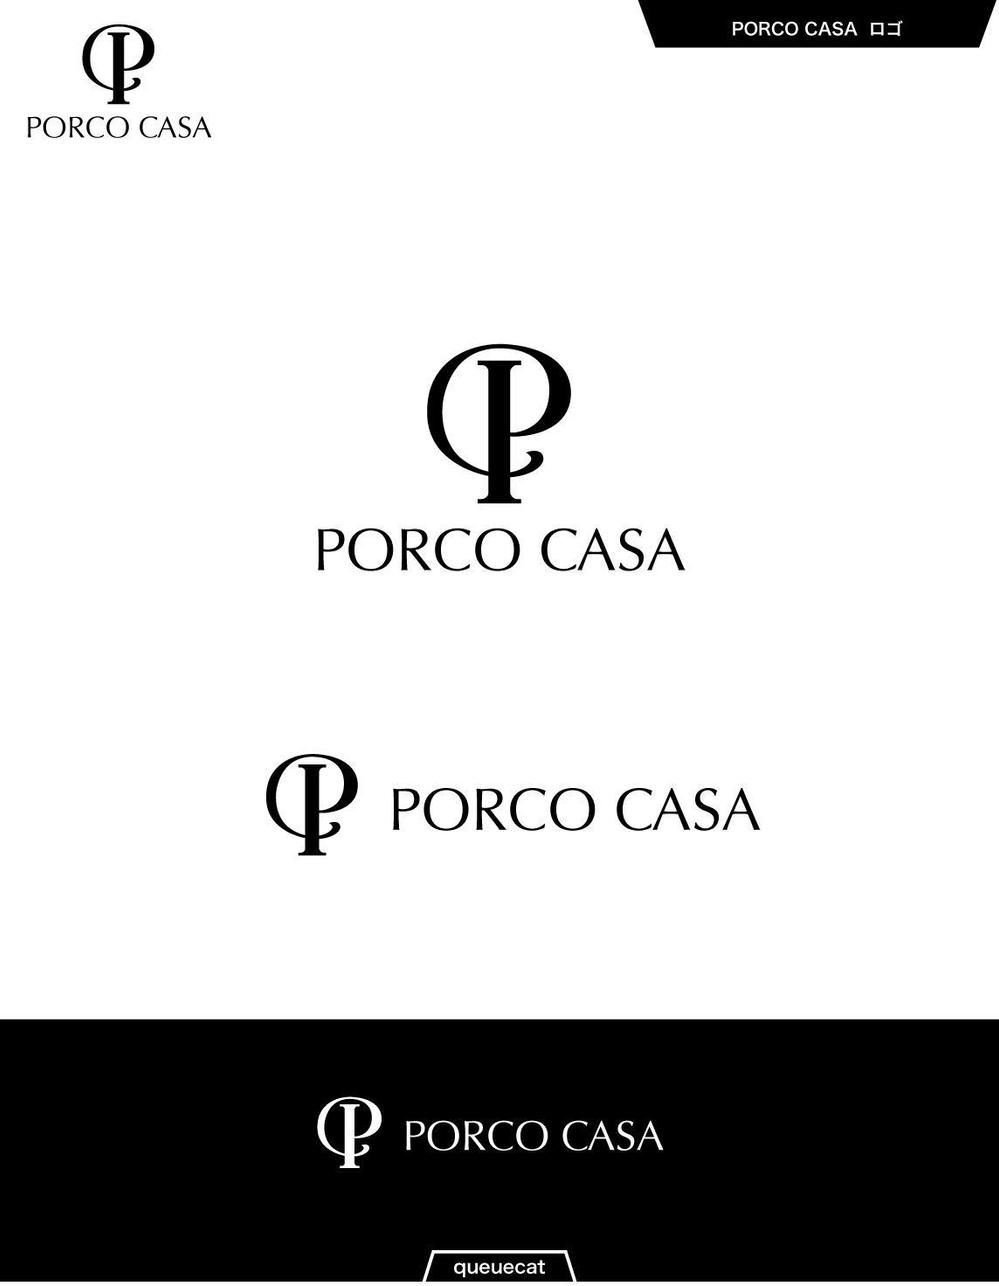 PORCO CASA1_1.jpg